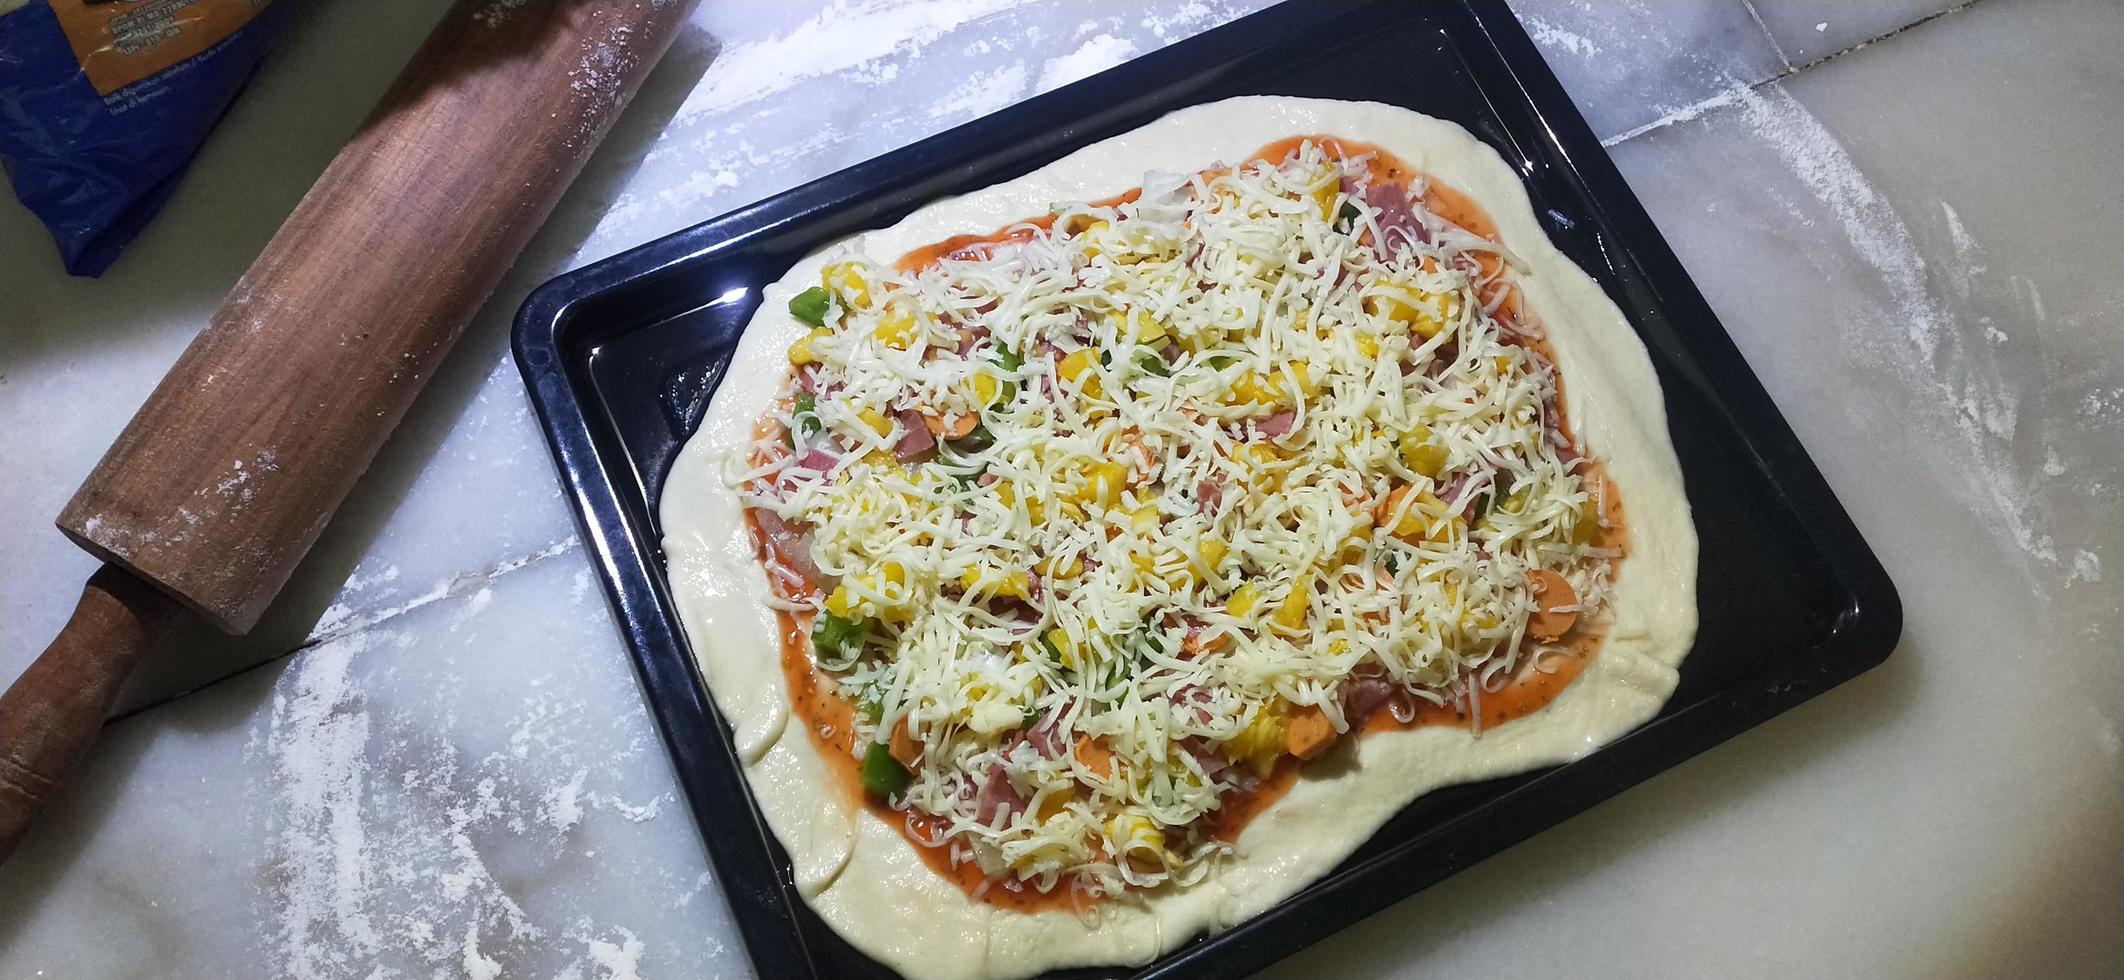 hemlagad pizza-stil pizzadeg foto